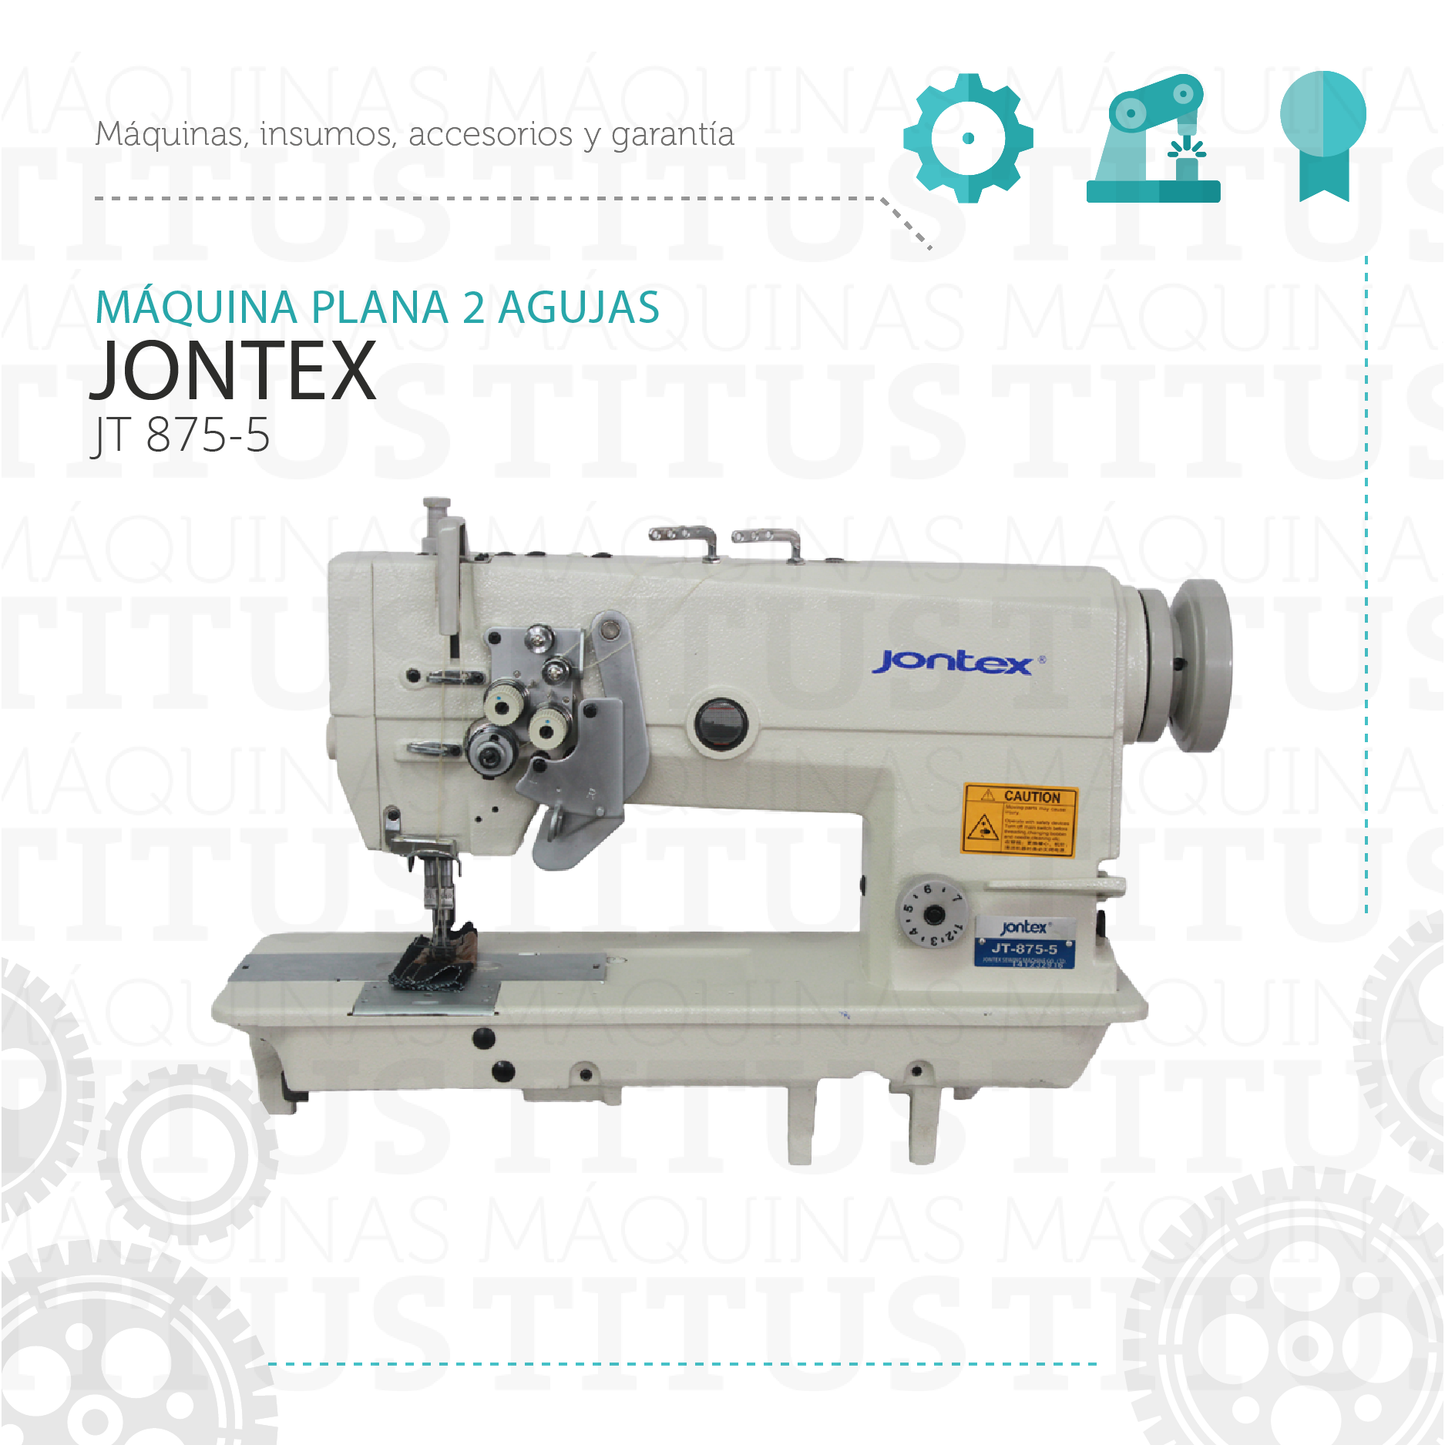 Plana Dos Agujas Jontex JT 875 5 Maquina De Coser - Commercio